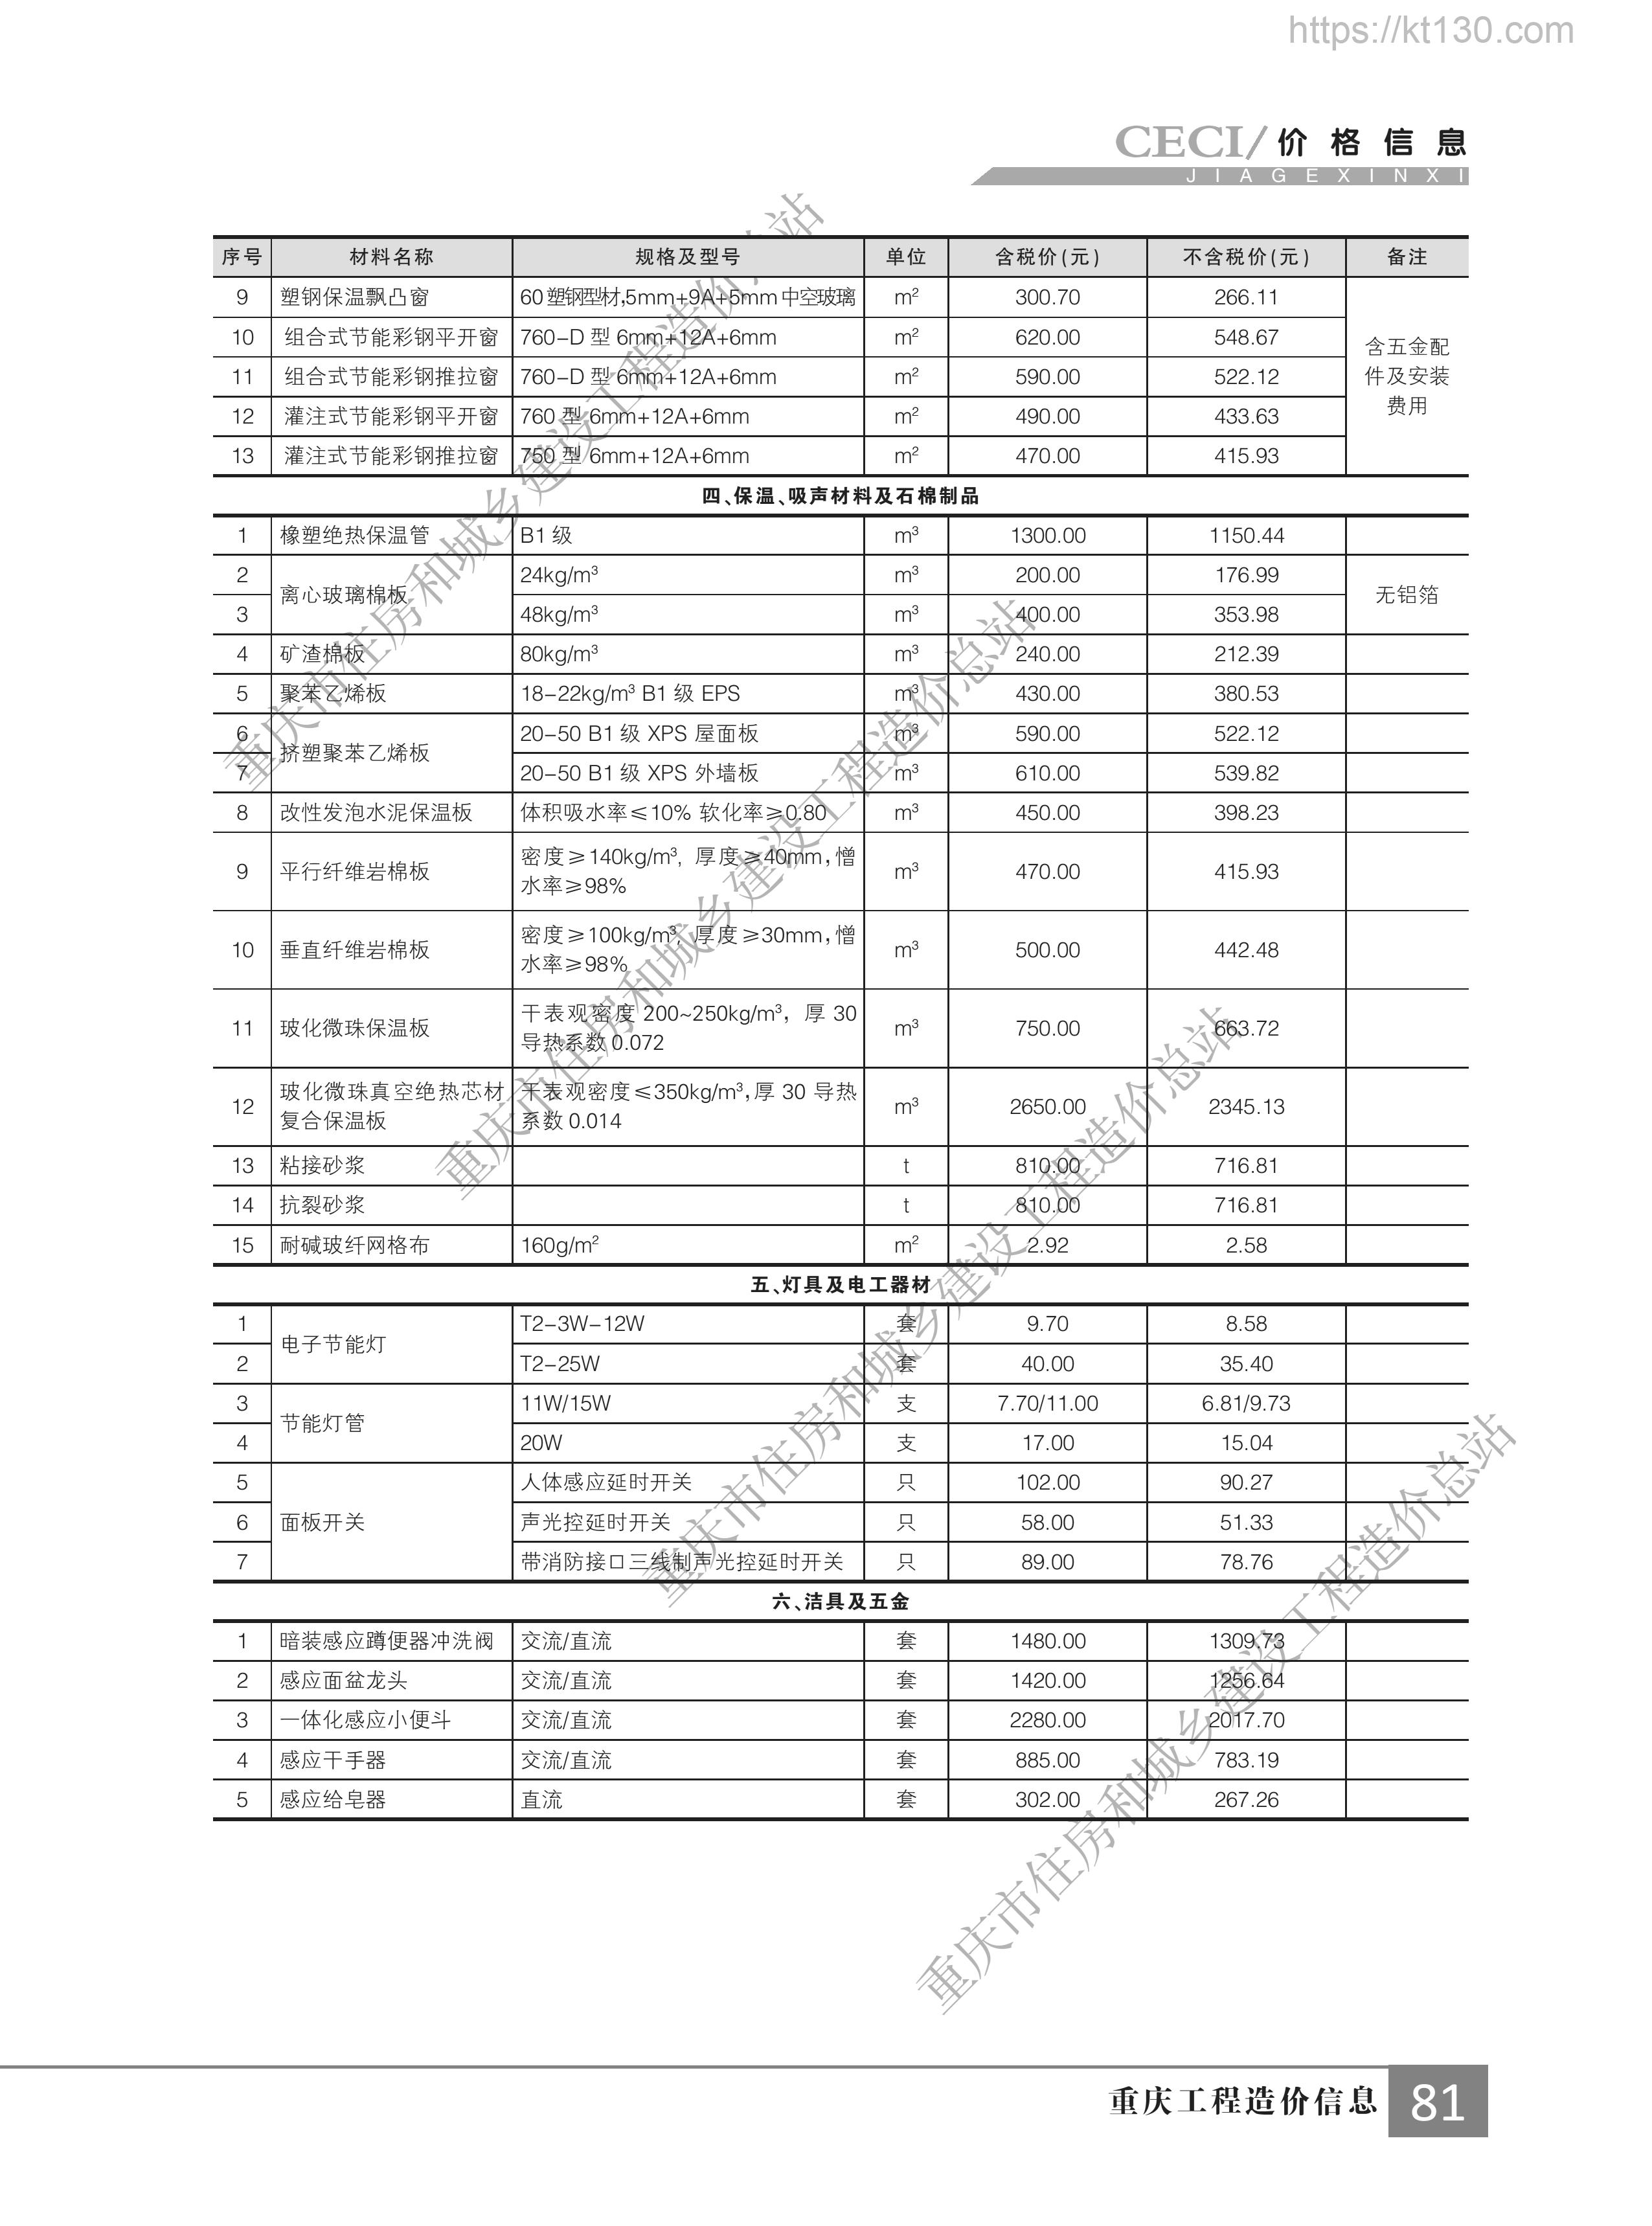 重庆市2022年11月份保温、吸声材料及石棉制品价格信息